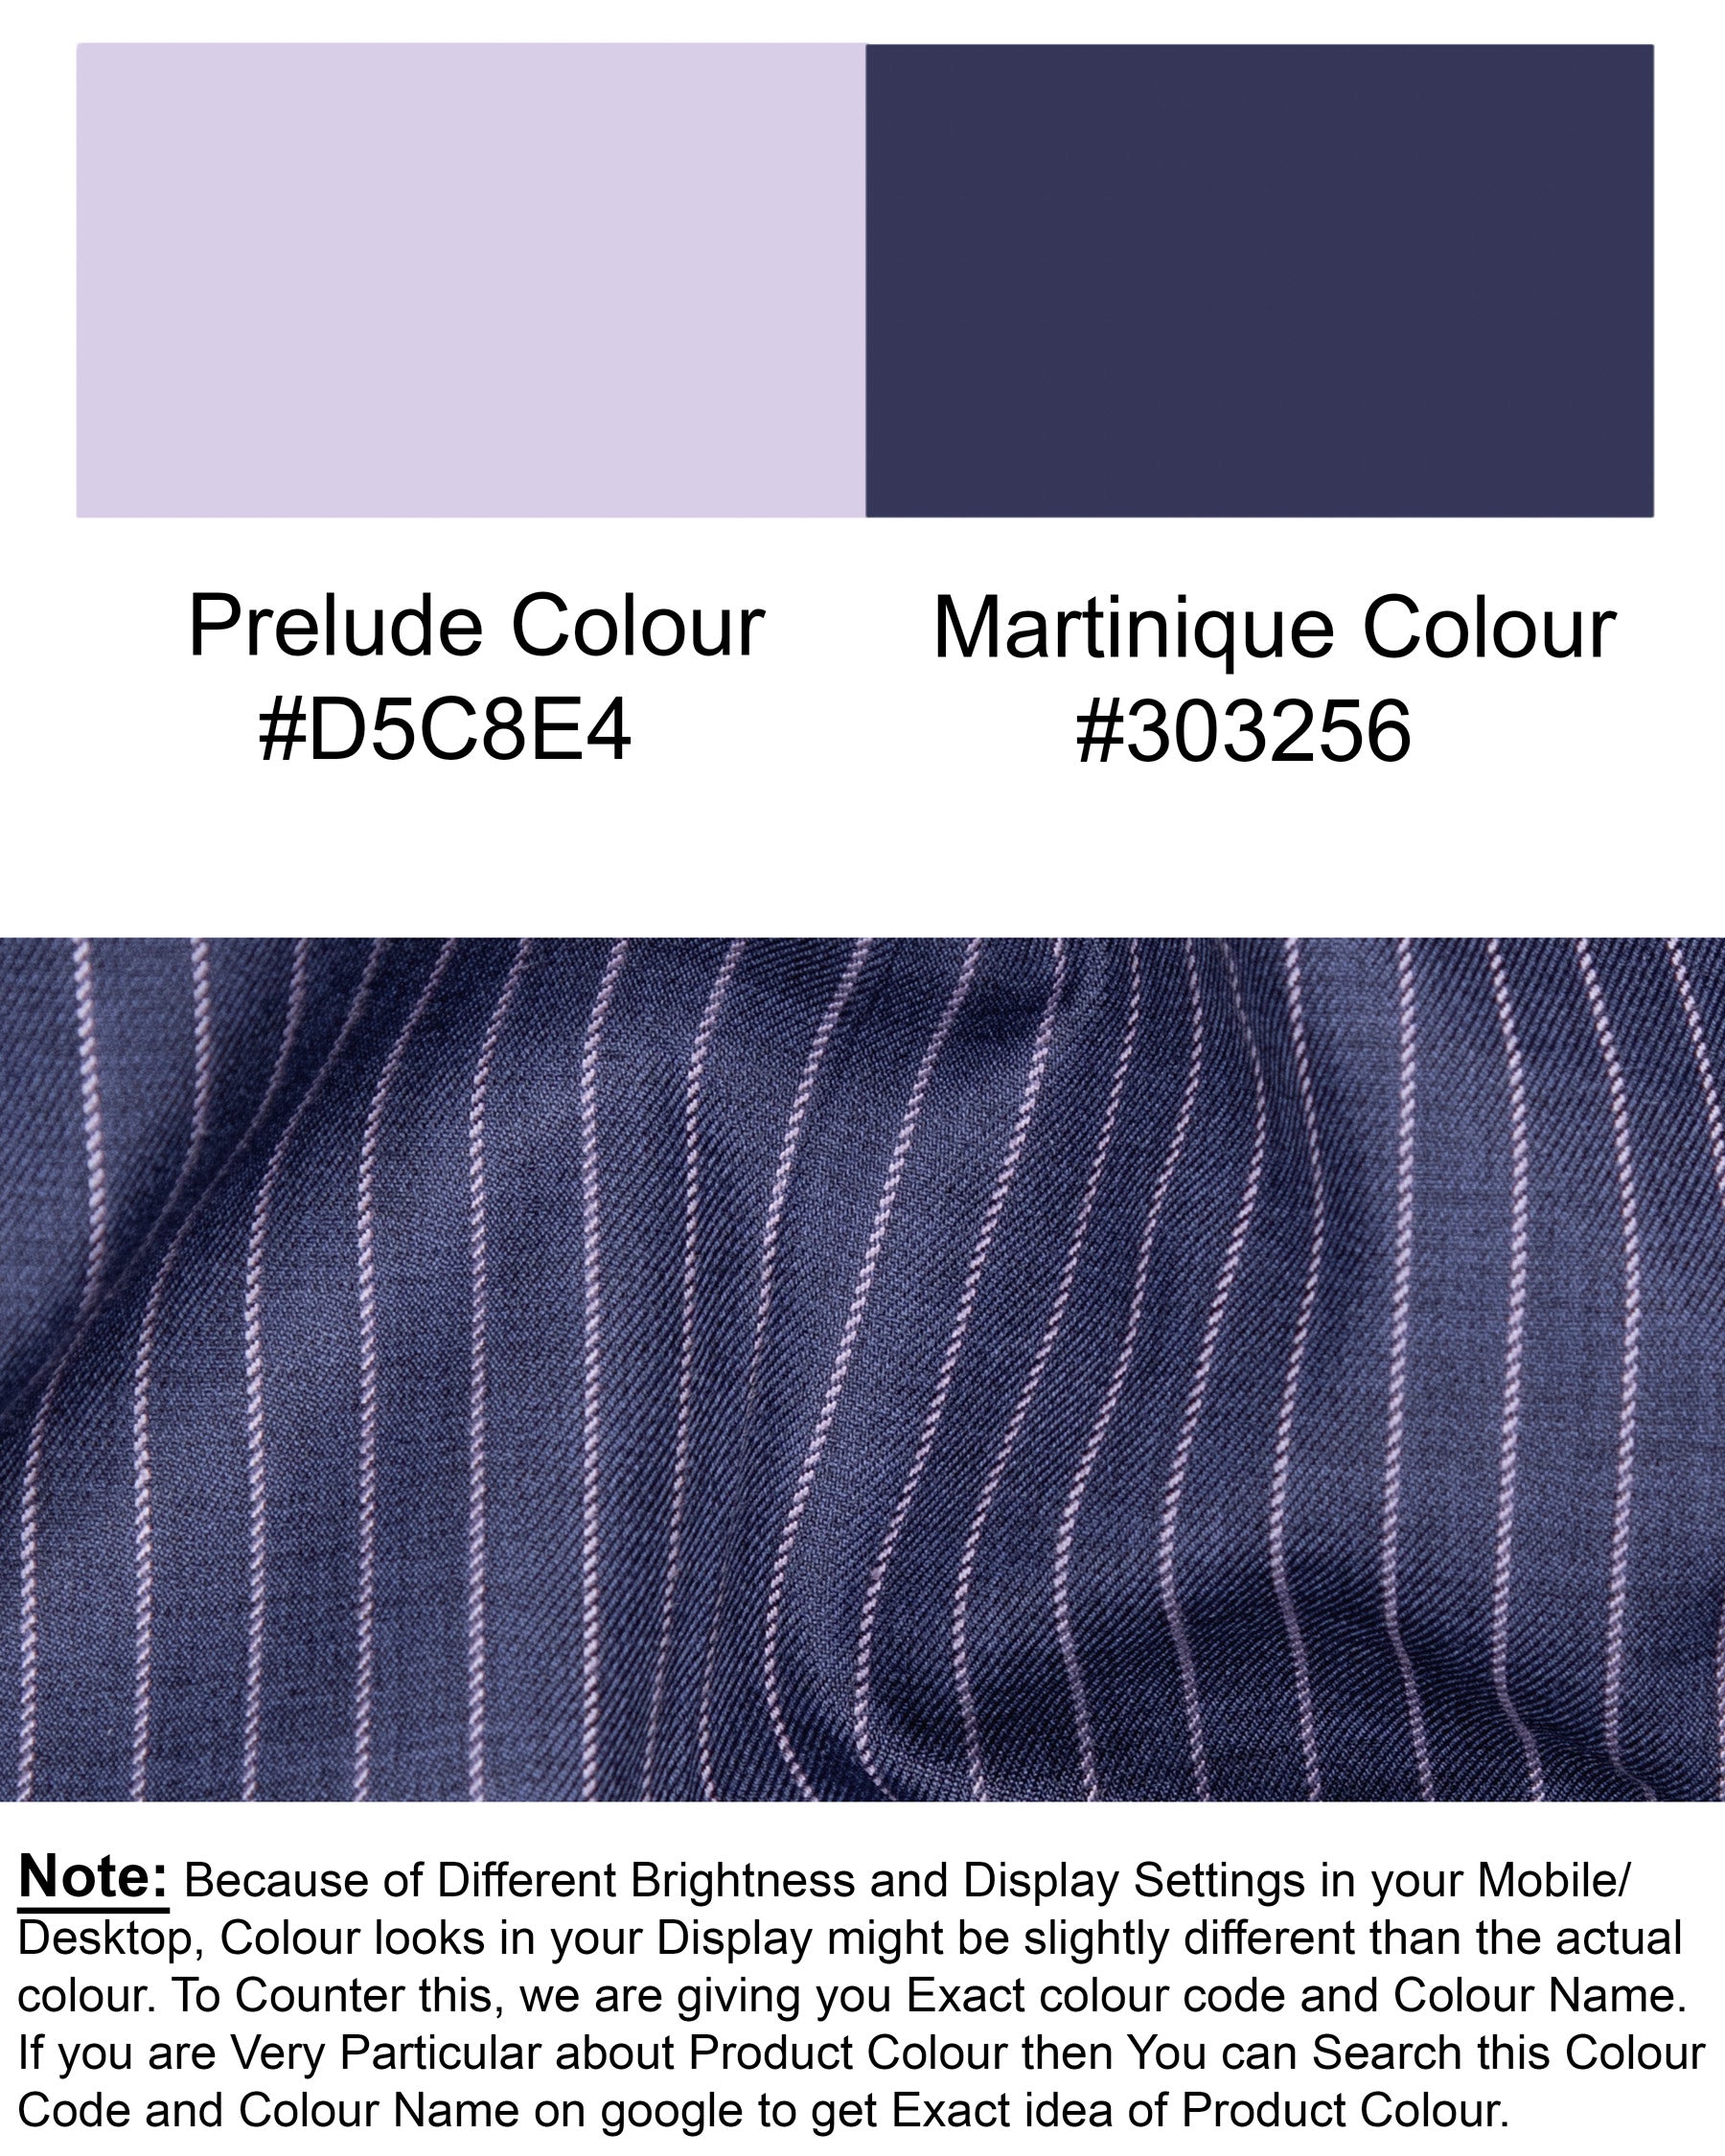 Martinique Blue with Prelude Striped Bandhgala/Mandarin Corduroy Premium Cotton Blazer BL1298-CBG-36, BL1298-CBG-40, BL1298-CBG-44, BL1298-CBG-46, BL1298-CBG-48, BL1298-CBG-50, BL1298-CBG-52, BL1298-CBG-54, BL1298-CBG-56, BL1298-CBG-58, BL1298-CBG-60, BL1298-CBG-38, BL1298-CBG-42